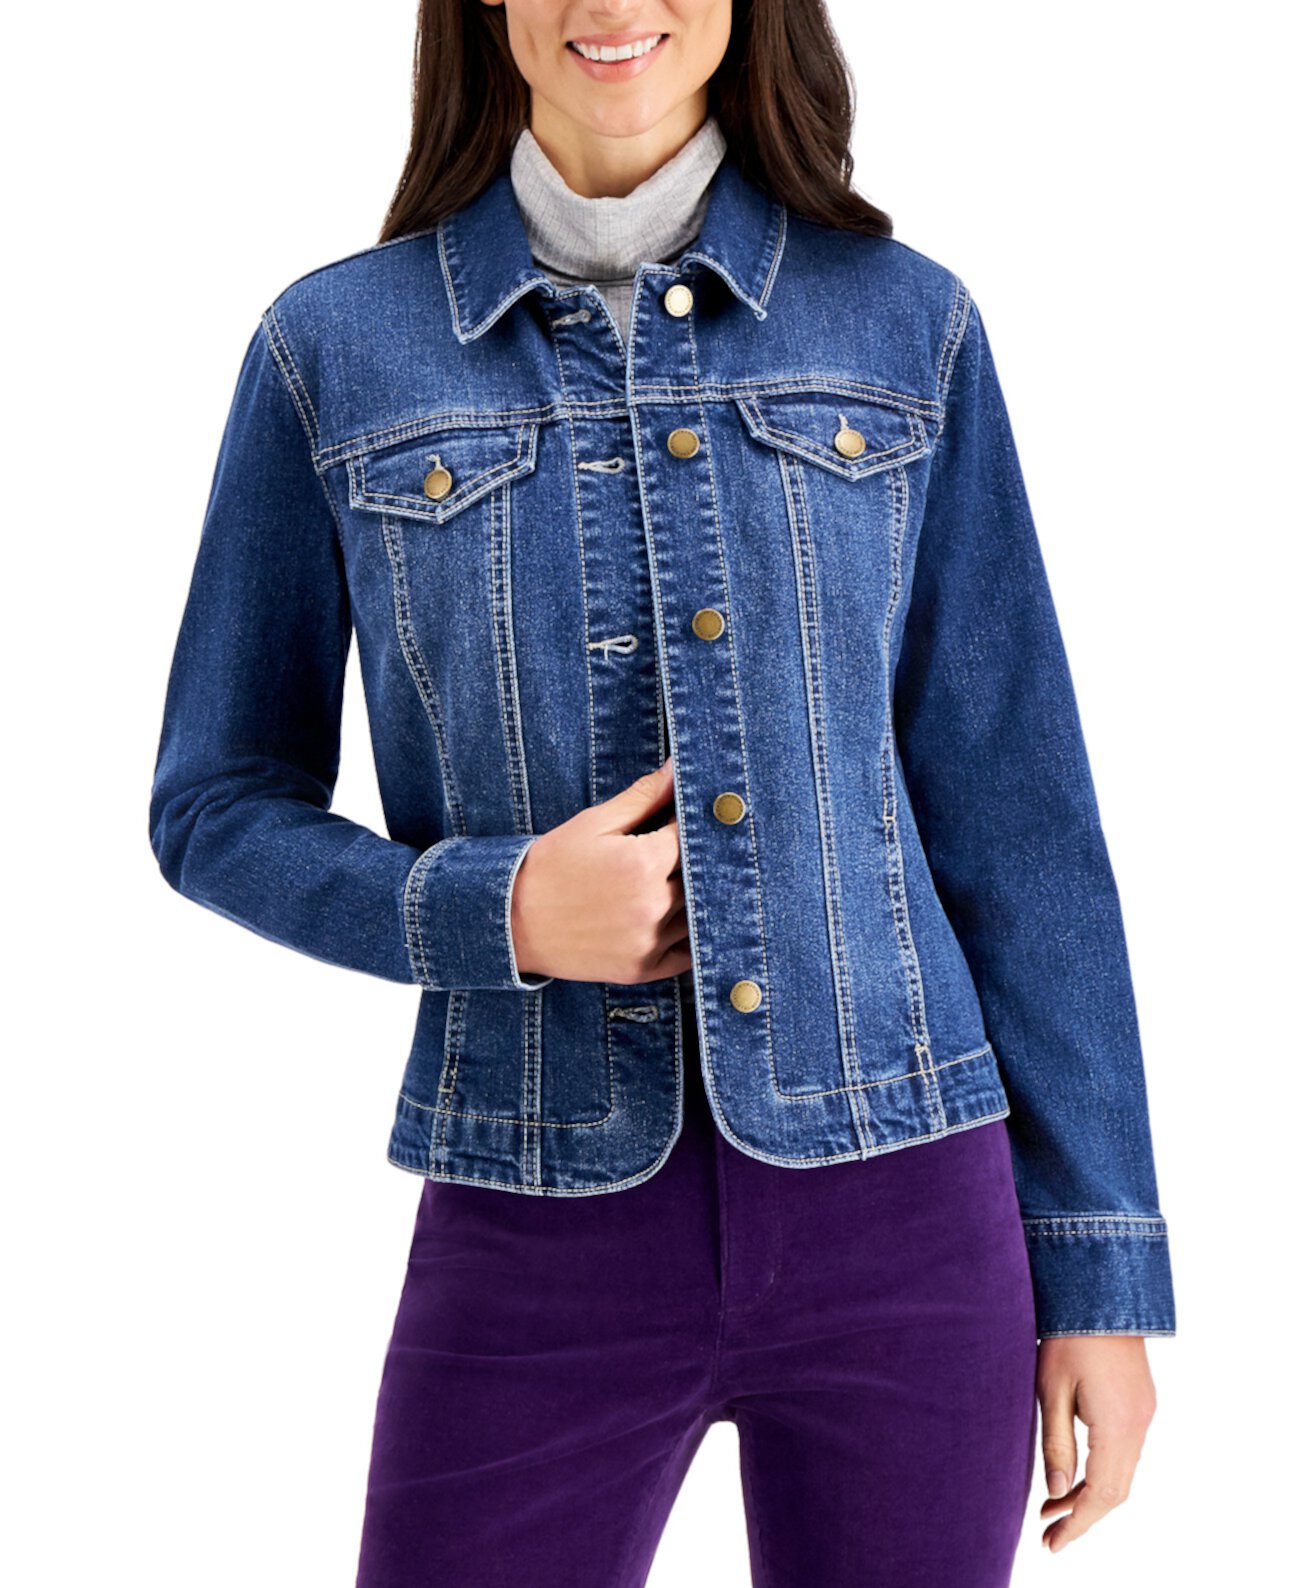 Джинсовая куртка на пуговицах, созданная для Macy's Charter Club